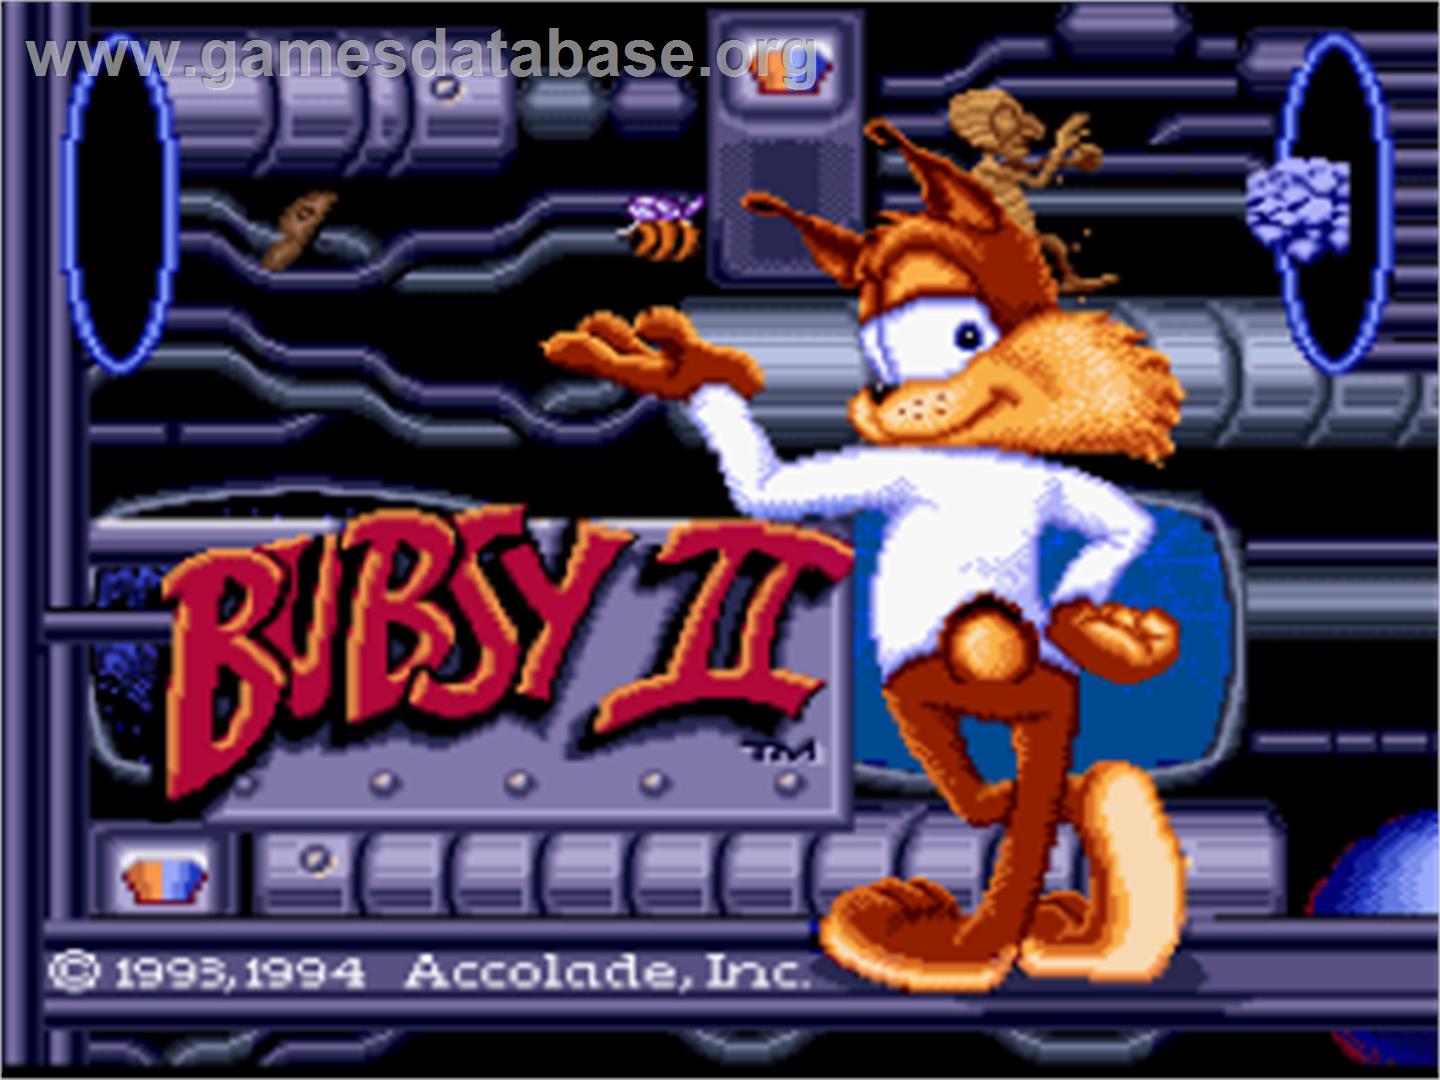 Bubsy II - Nintendo SNES - Artwork - Title Screen